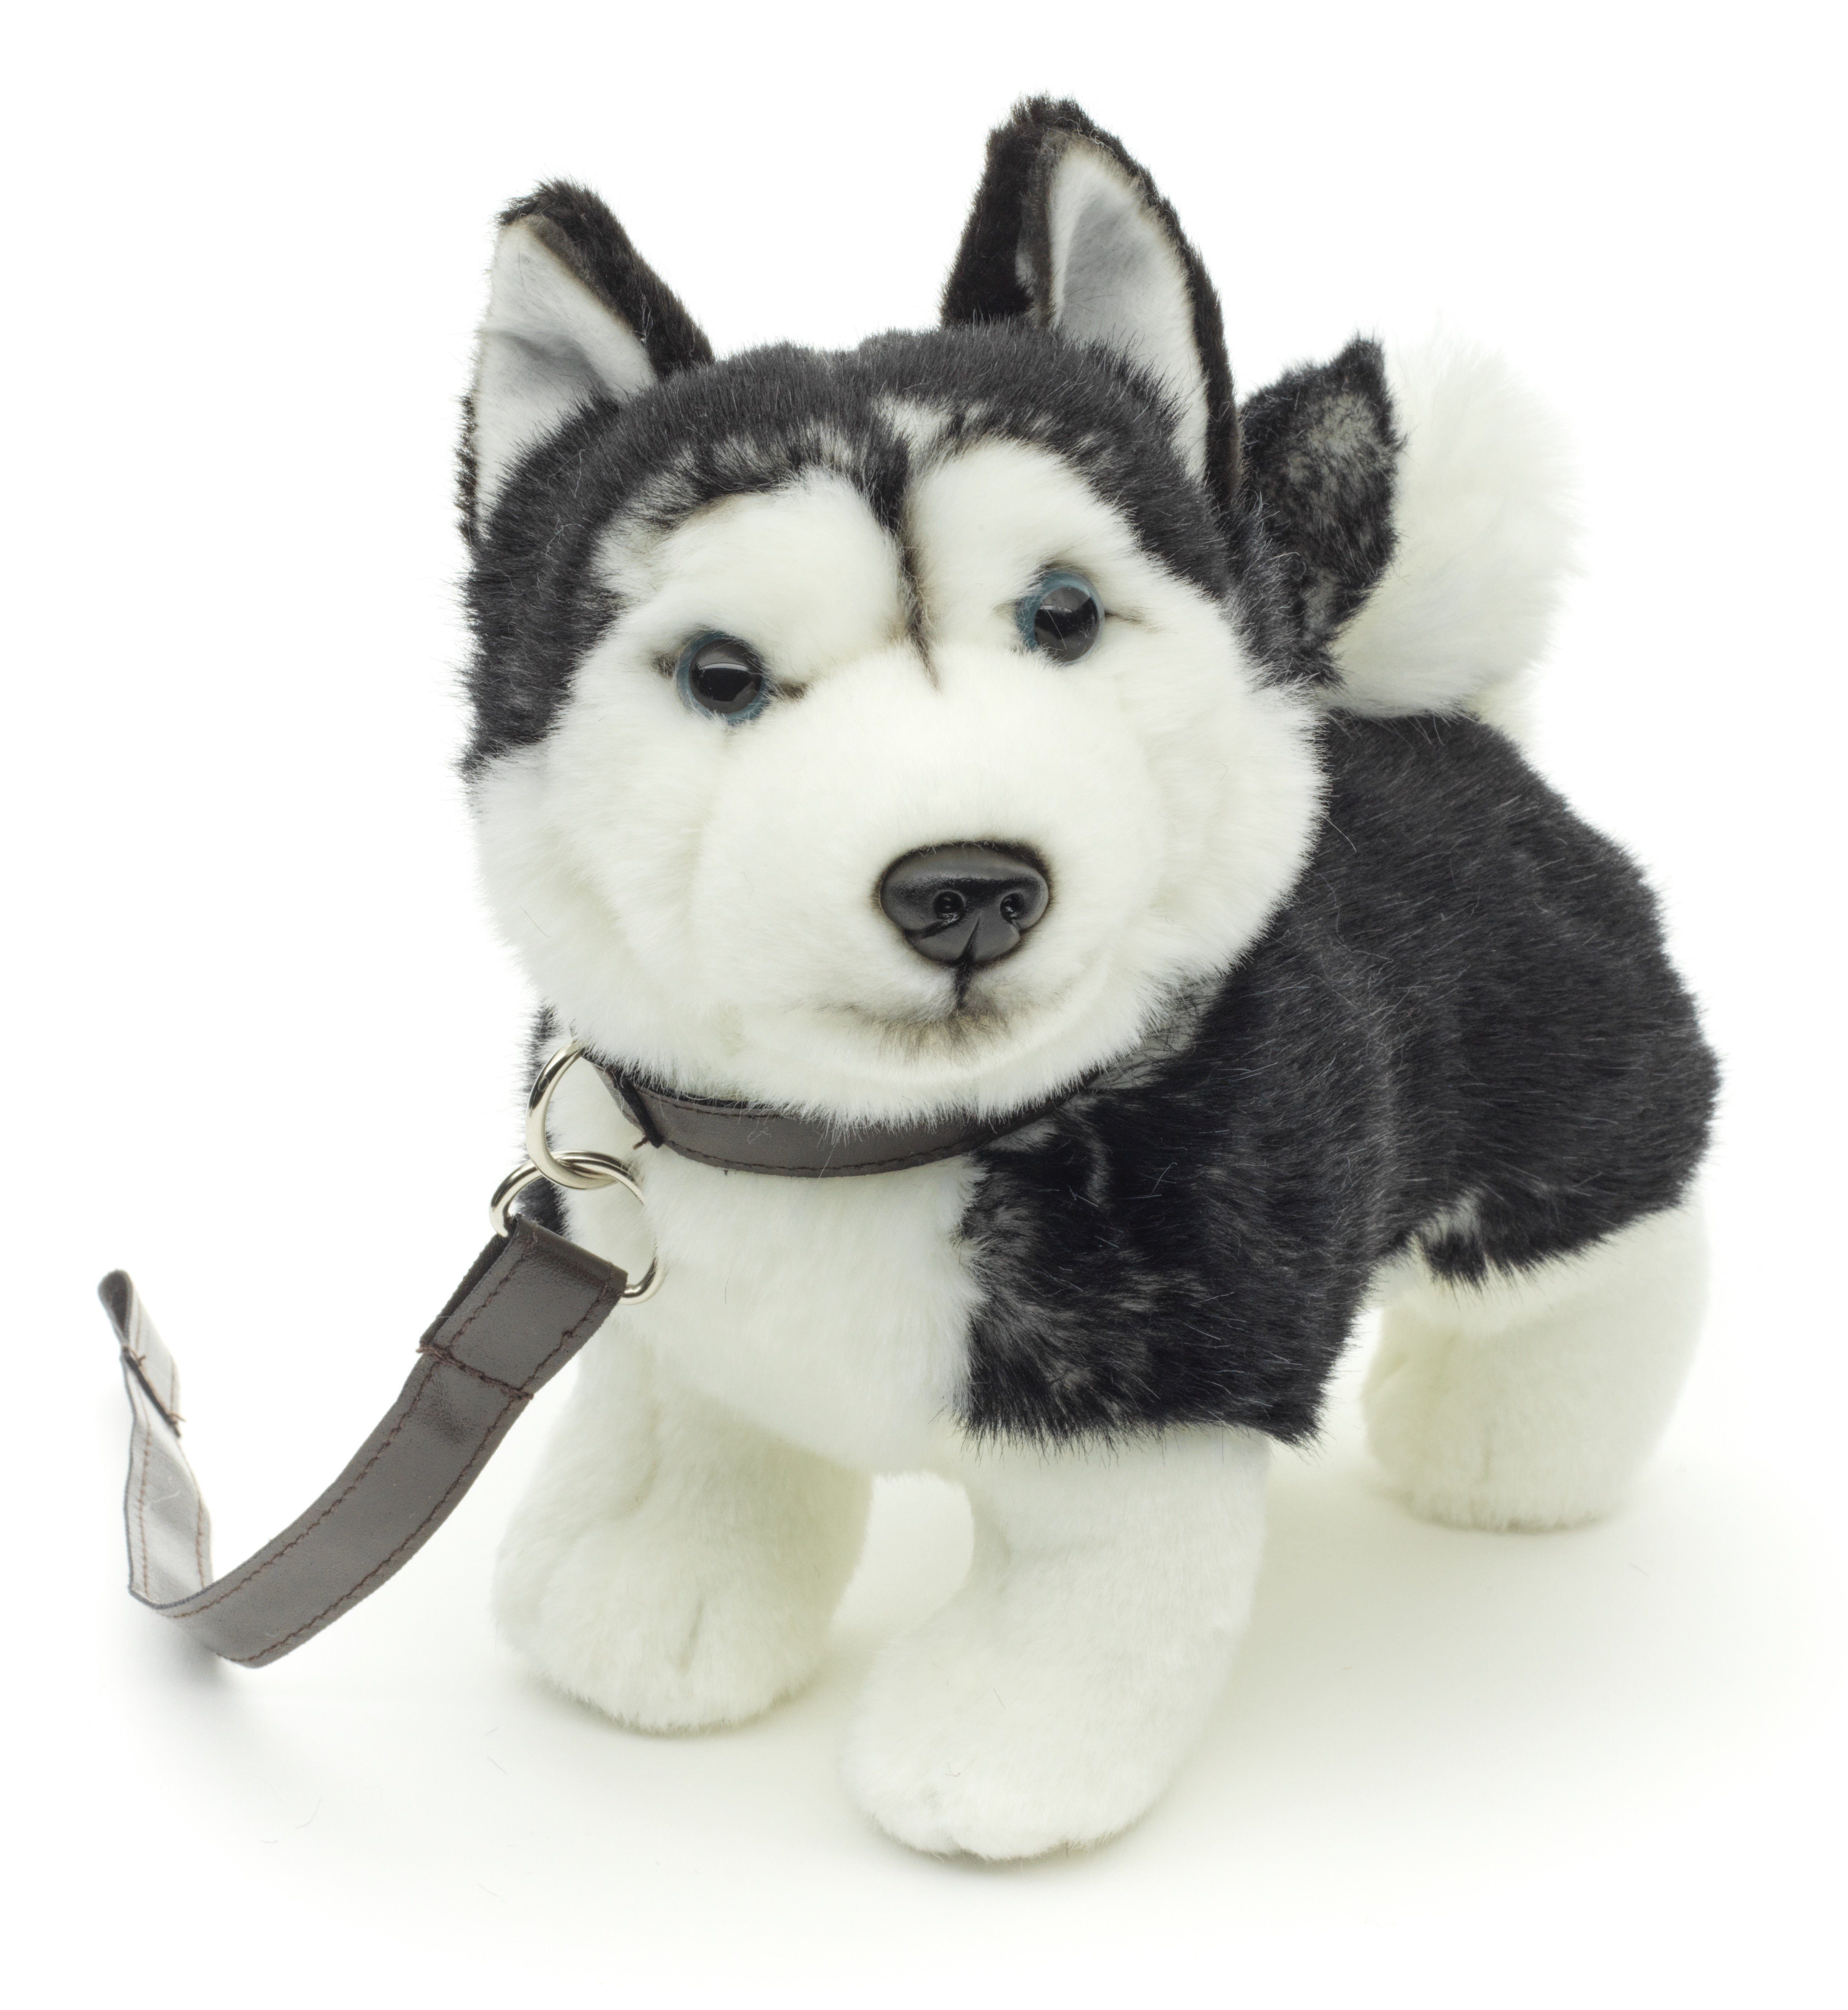 Uni-Toys Kuscheltier Husky Welpe schwarz, stehend (mLeine), 24 cm - Plüsch-Hund, Plüschtier, zu 100 % recyceltes Füllmaterial